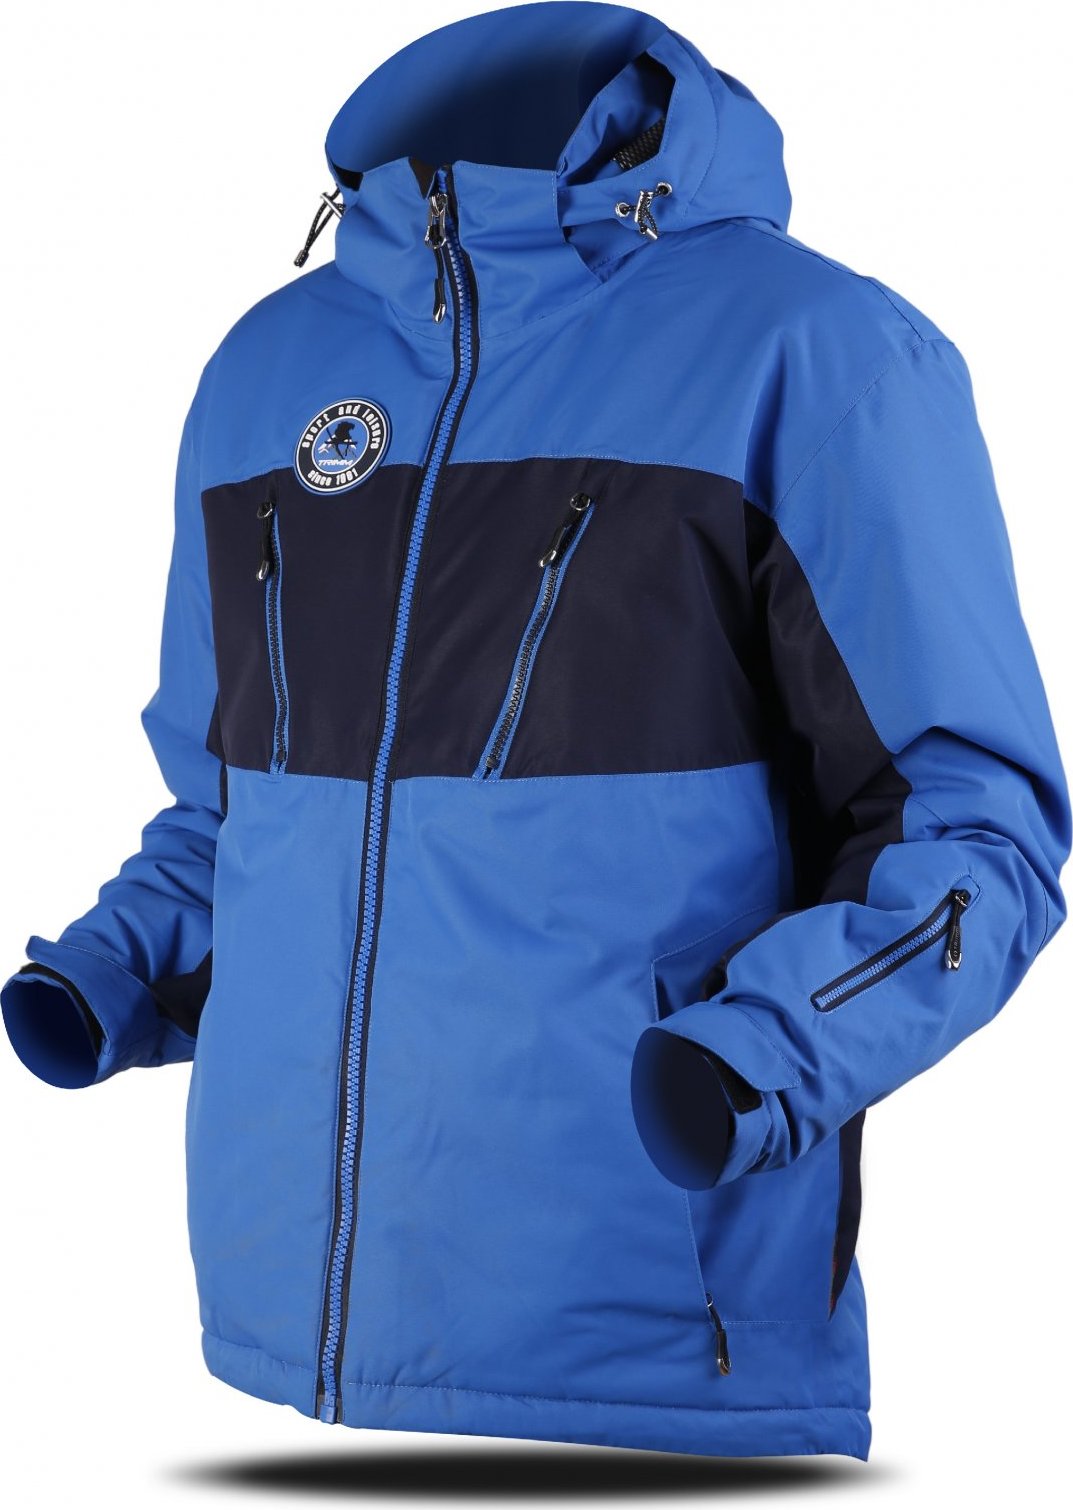 Pánská lyžařská bunda TRIMM Dynamit modrá Velikost: L, Barva: jeans blue/ navy